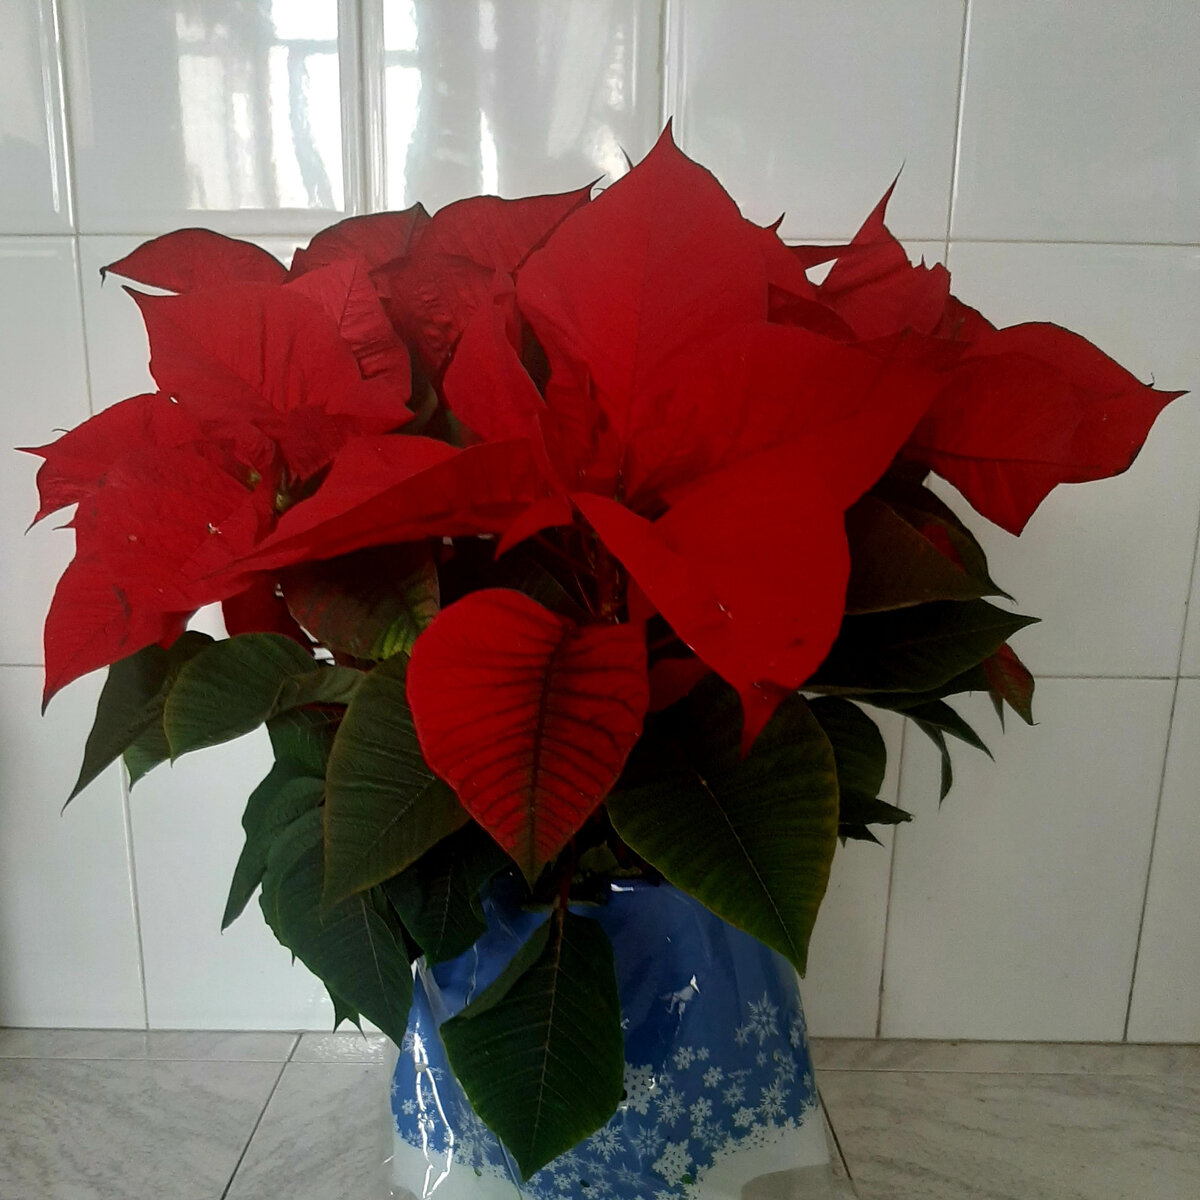 Рождественский цветок Пуансеттия - Flor de Navidad или Flor de Pascua цветет только зимой (с декабря по февраль) и считается в Испании символом Рождества и Нового года.